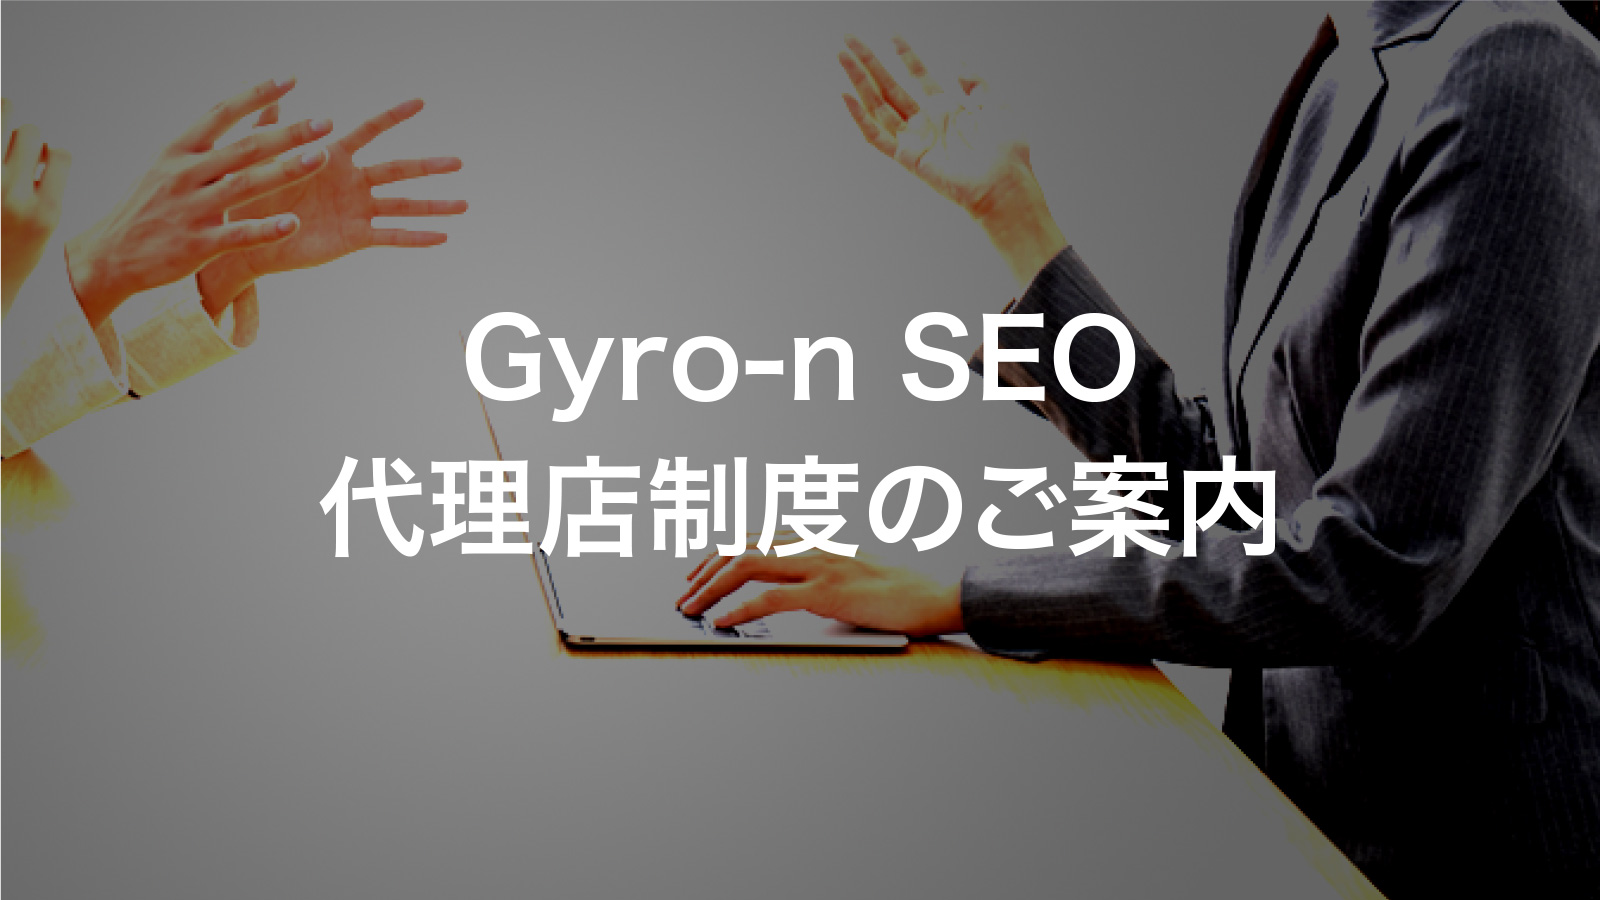 Gyro-n SEO代理店制度